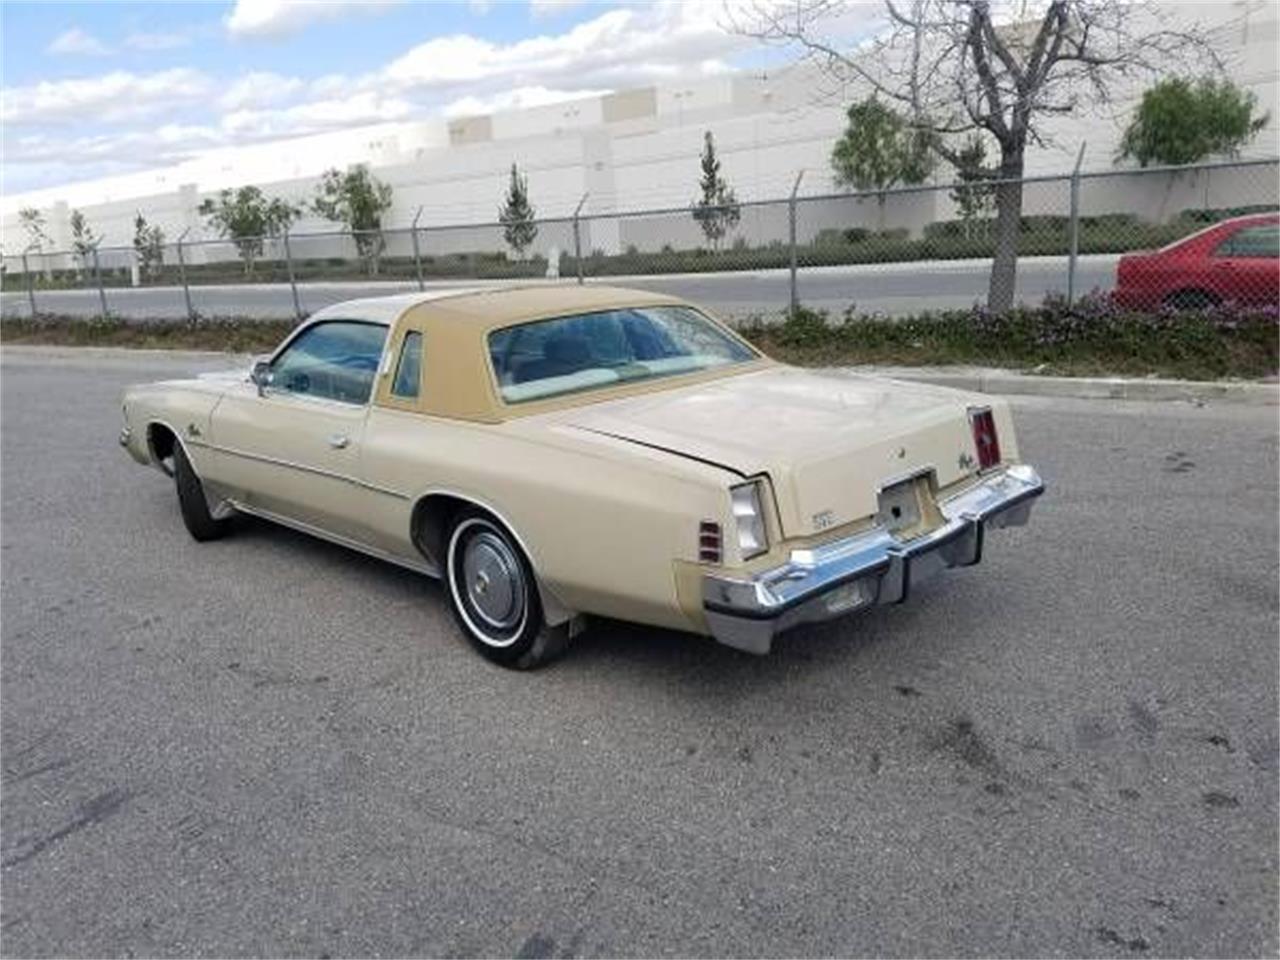 1975 Chrysler Cordoba for Sale | ClassicCars.com | CC-1124873